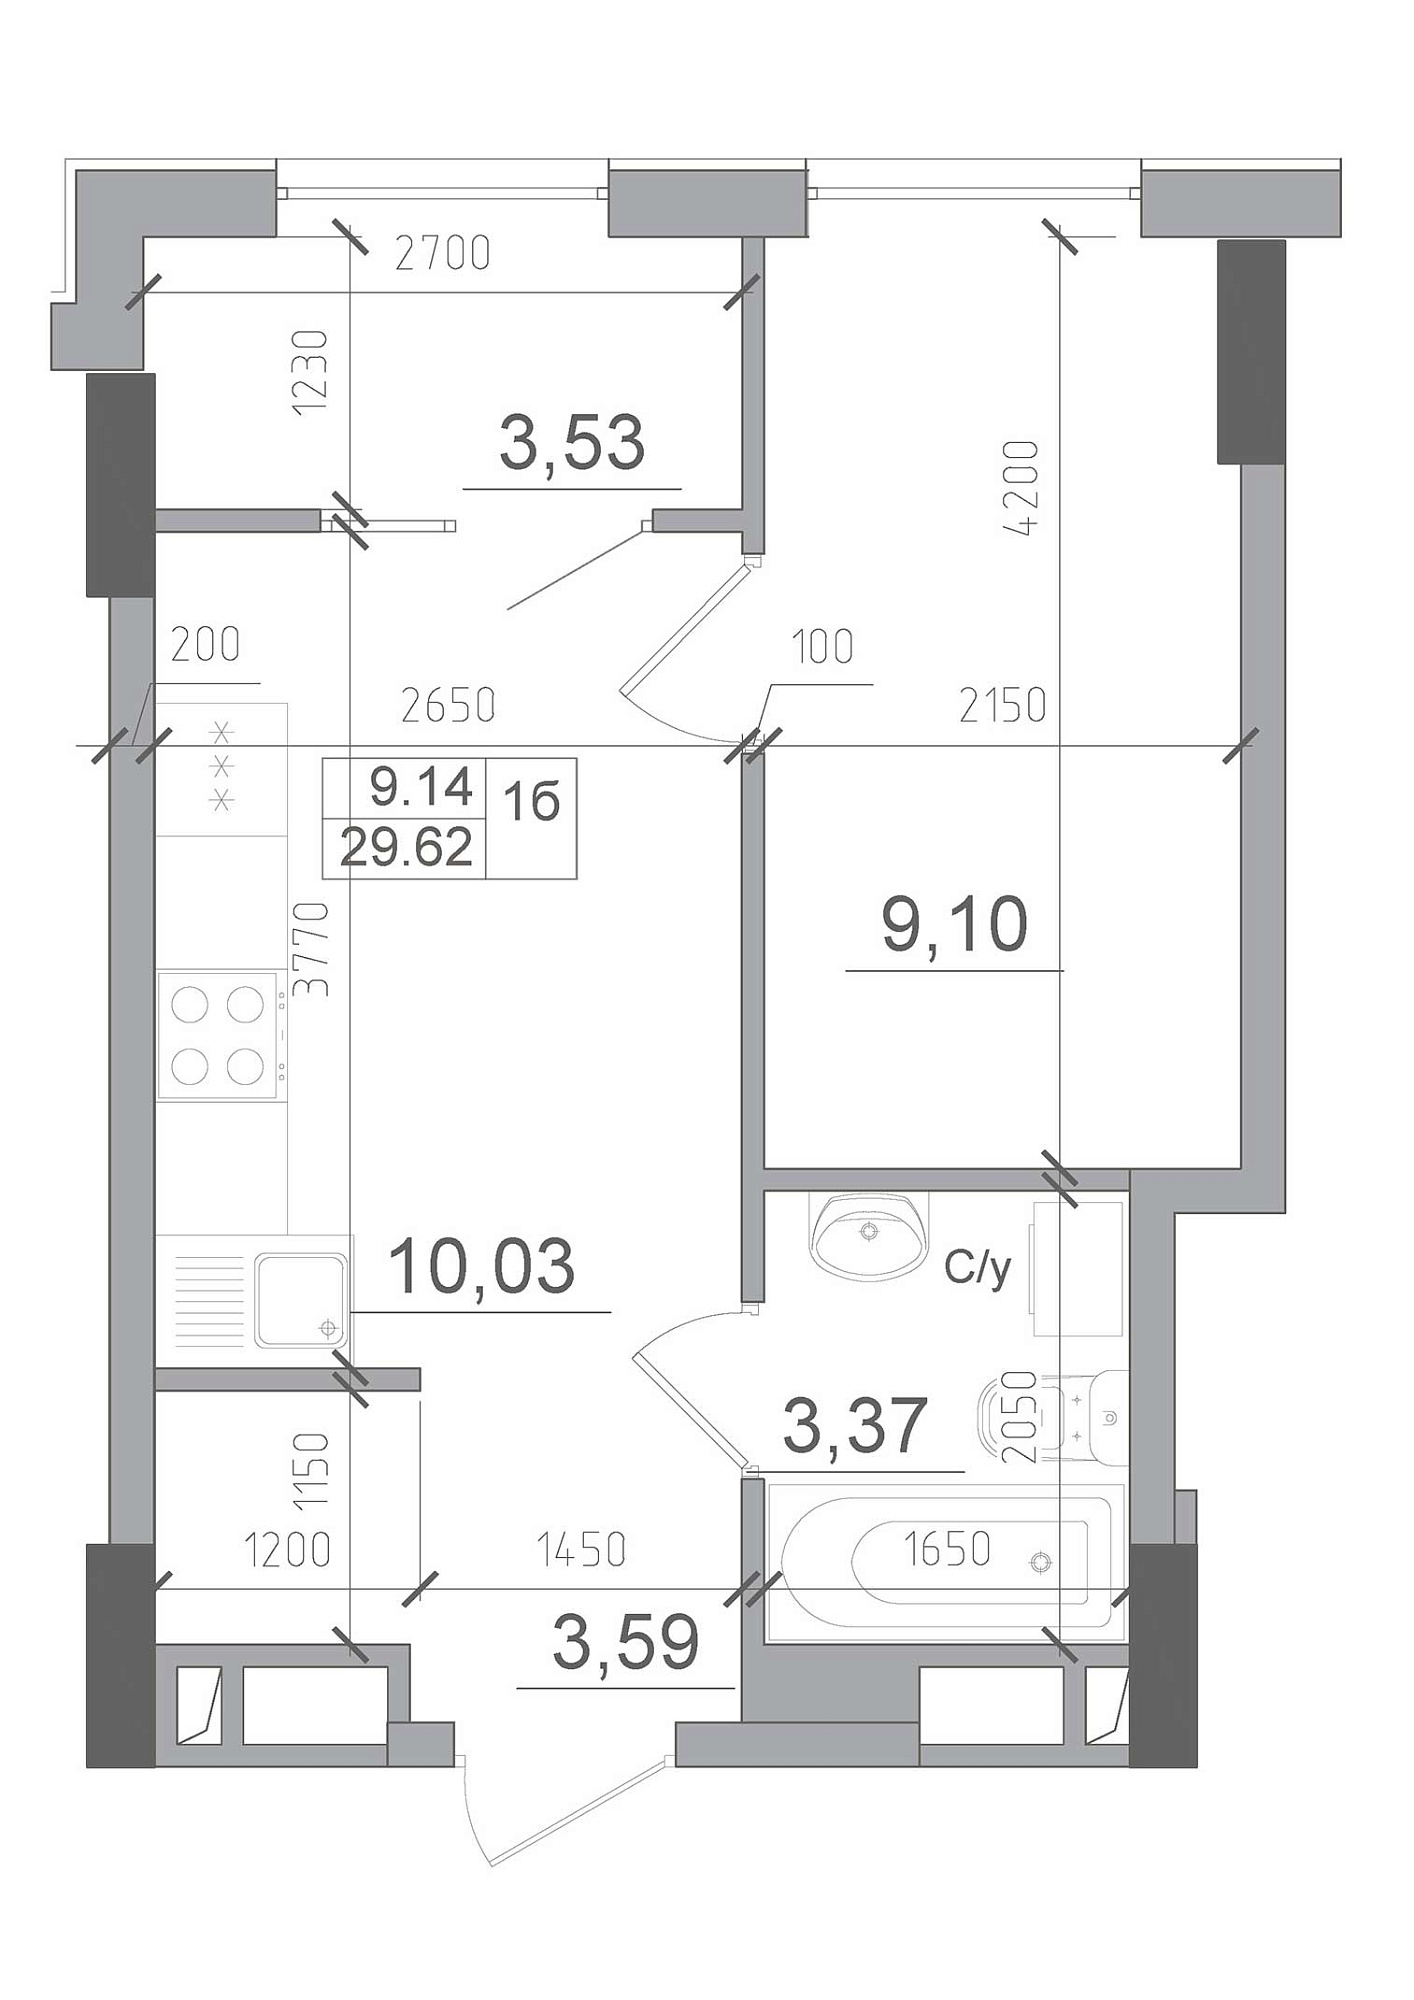 Планировка 1-к квартира площей 29.62м2, AB-22-06/00002.